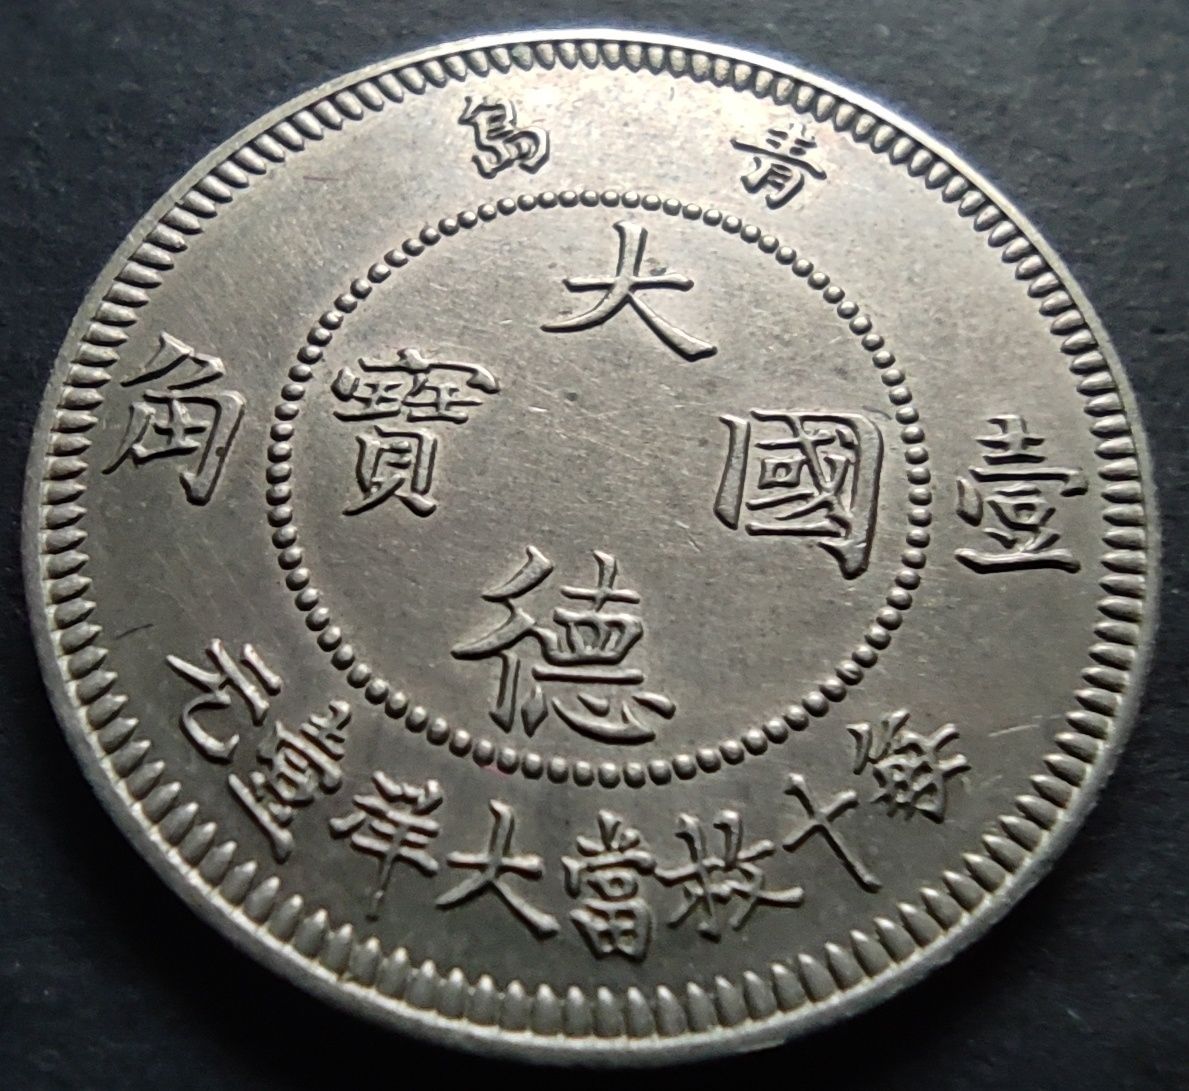 10 centów 1909 Kiautschou - Niemiecka Kolonia